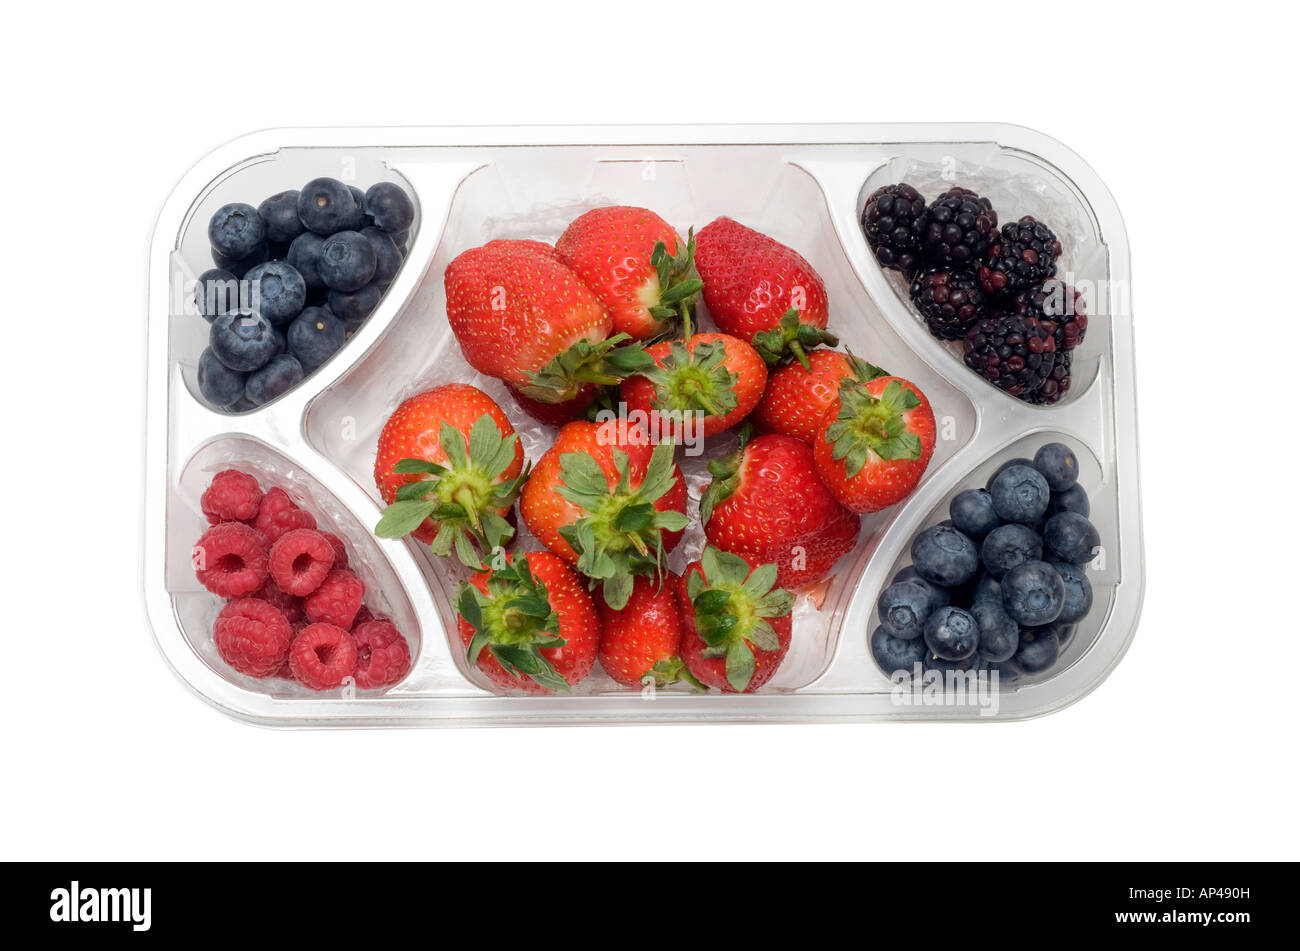 Fruits mélangés dans un bac en plastique transparent Banque D'Images